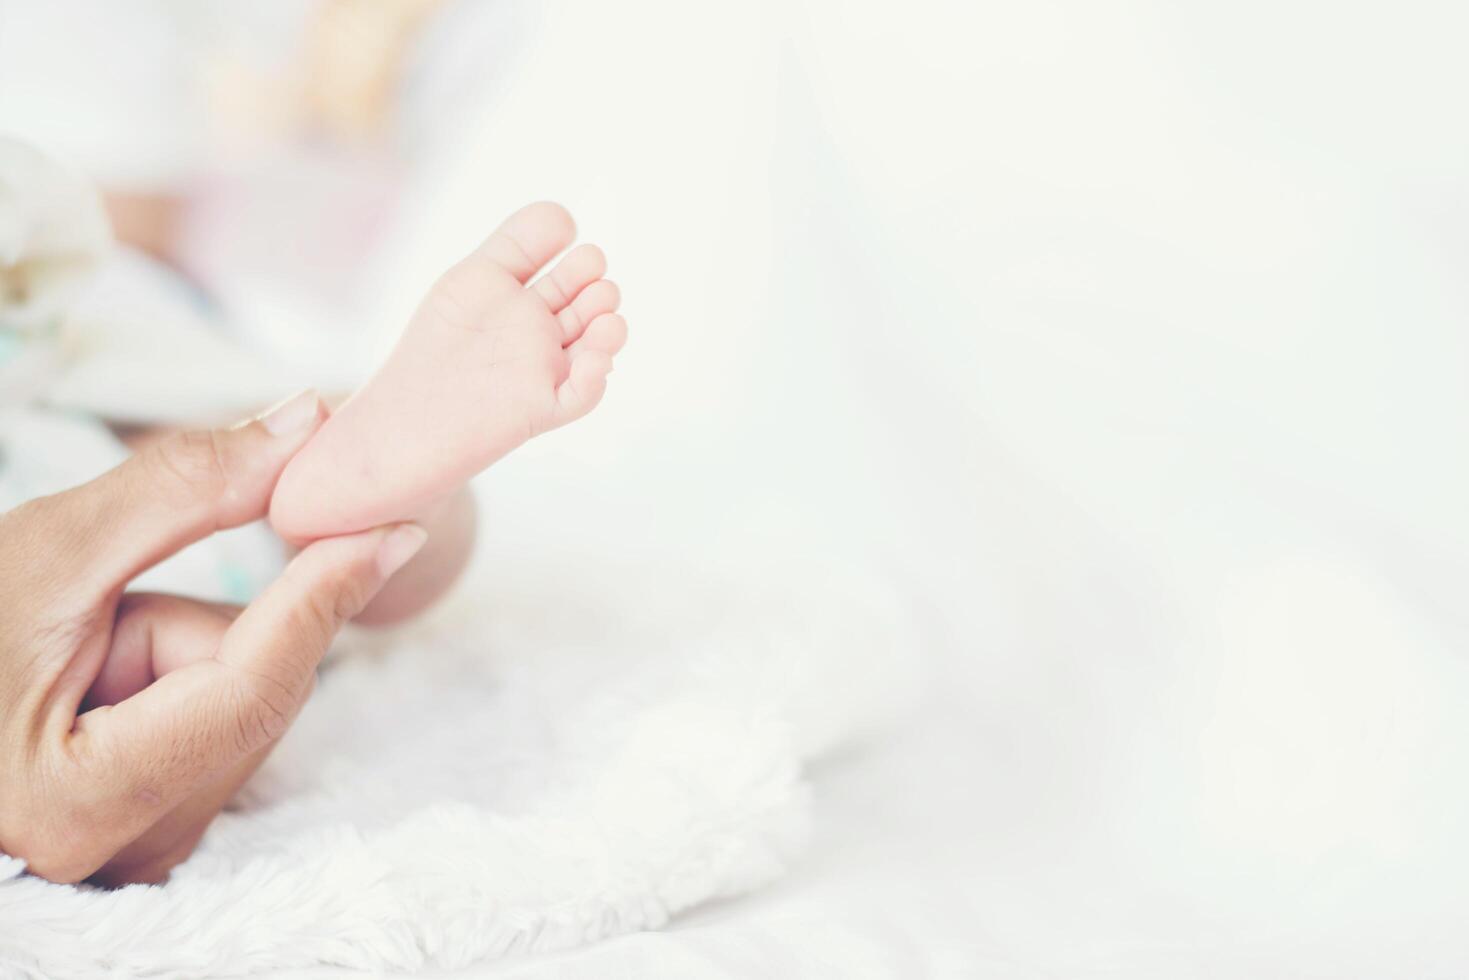 pieds de bébé nouveau-né dans les mains de la mère. photo